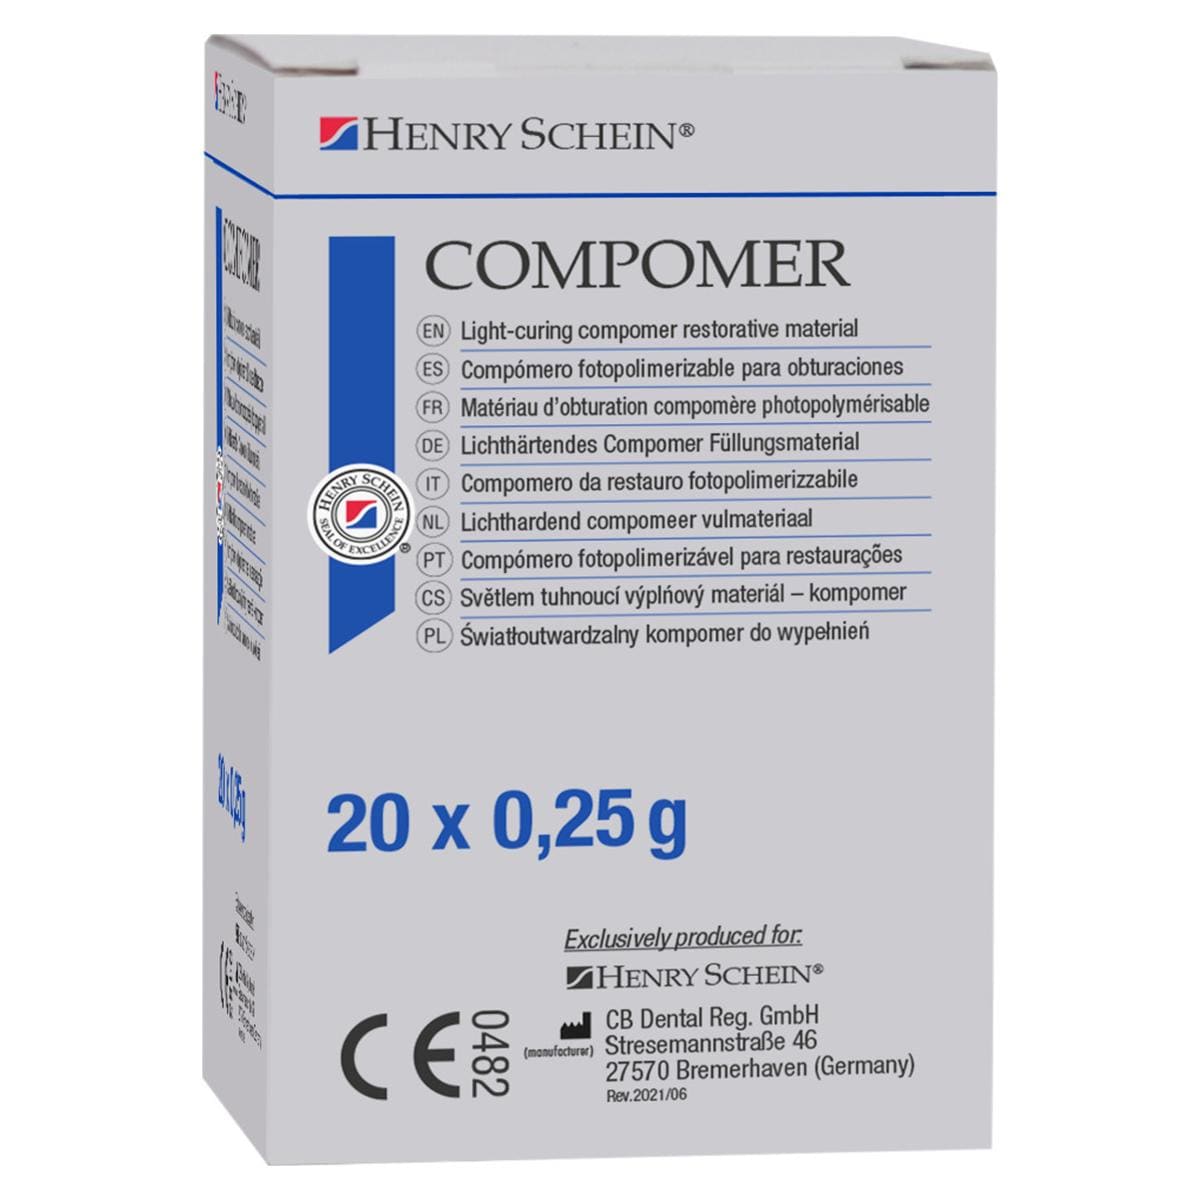 Compomre - A2 capsules, 20x 0,25 g